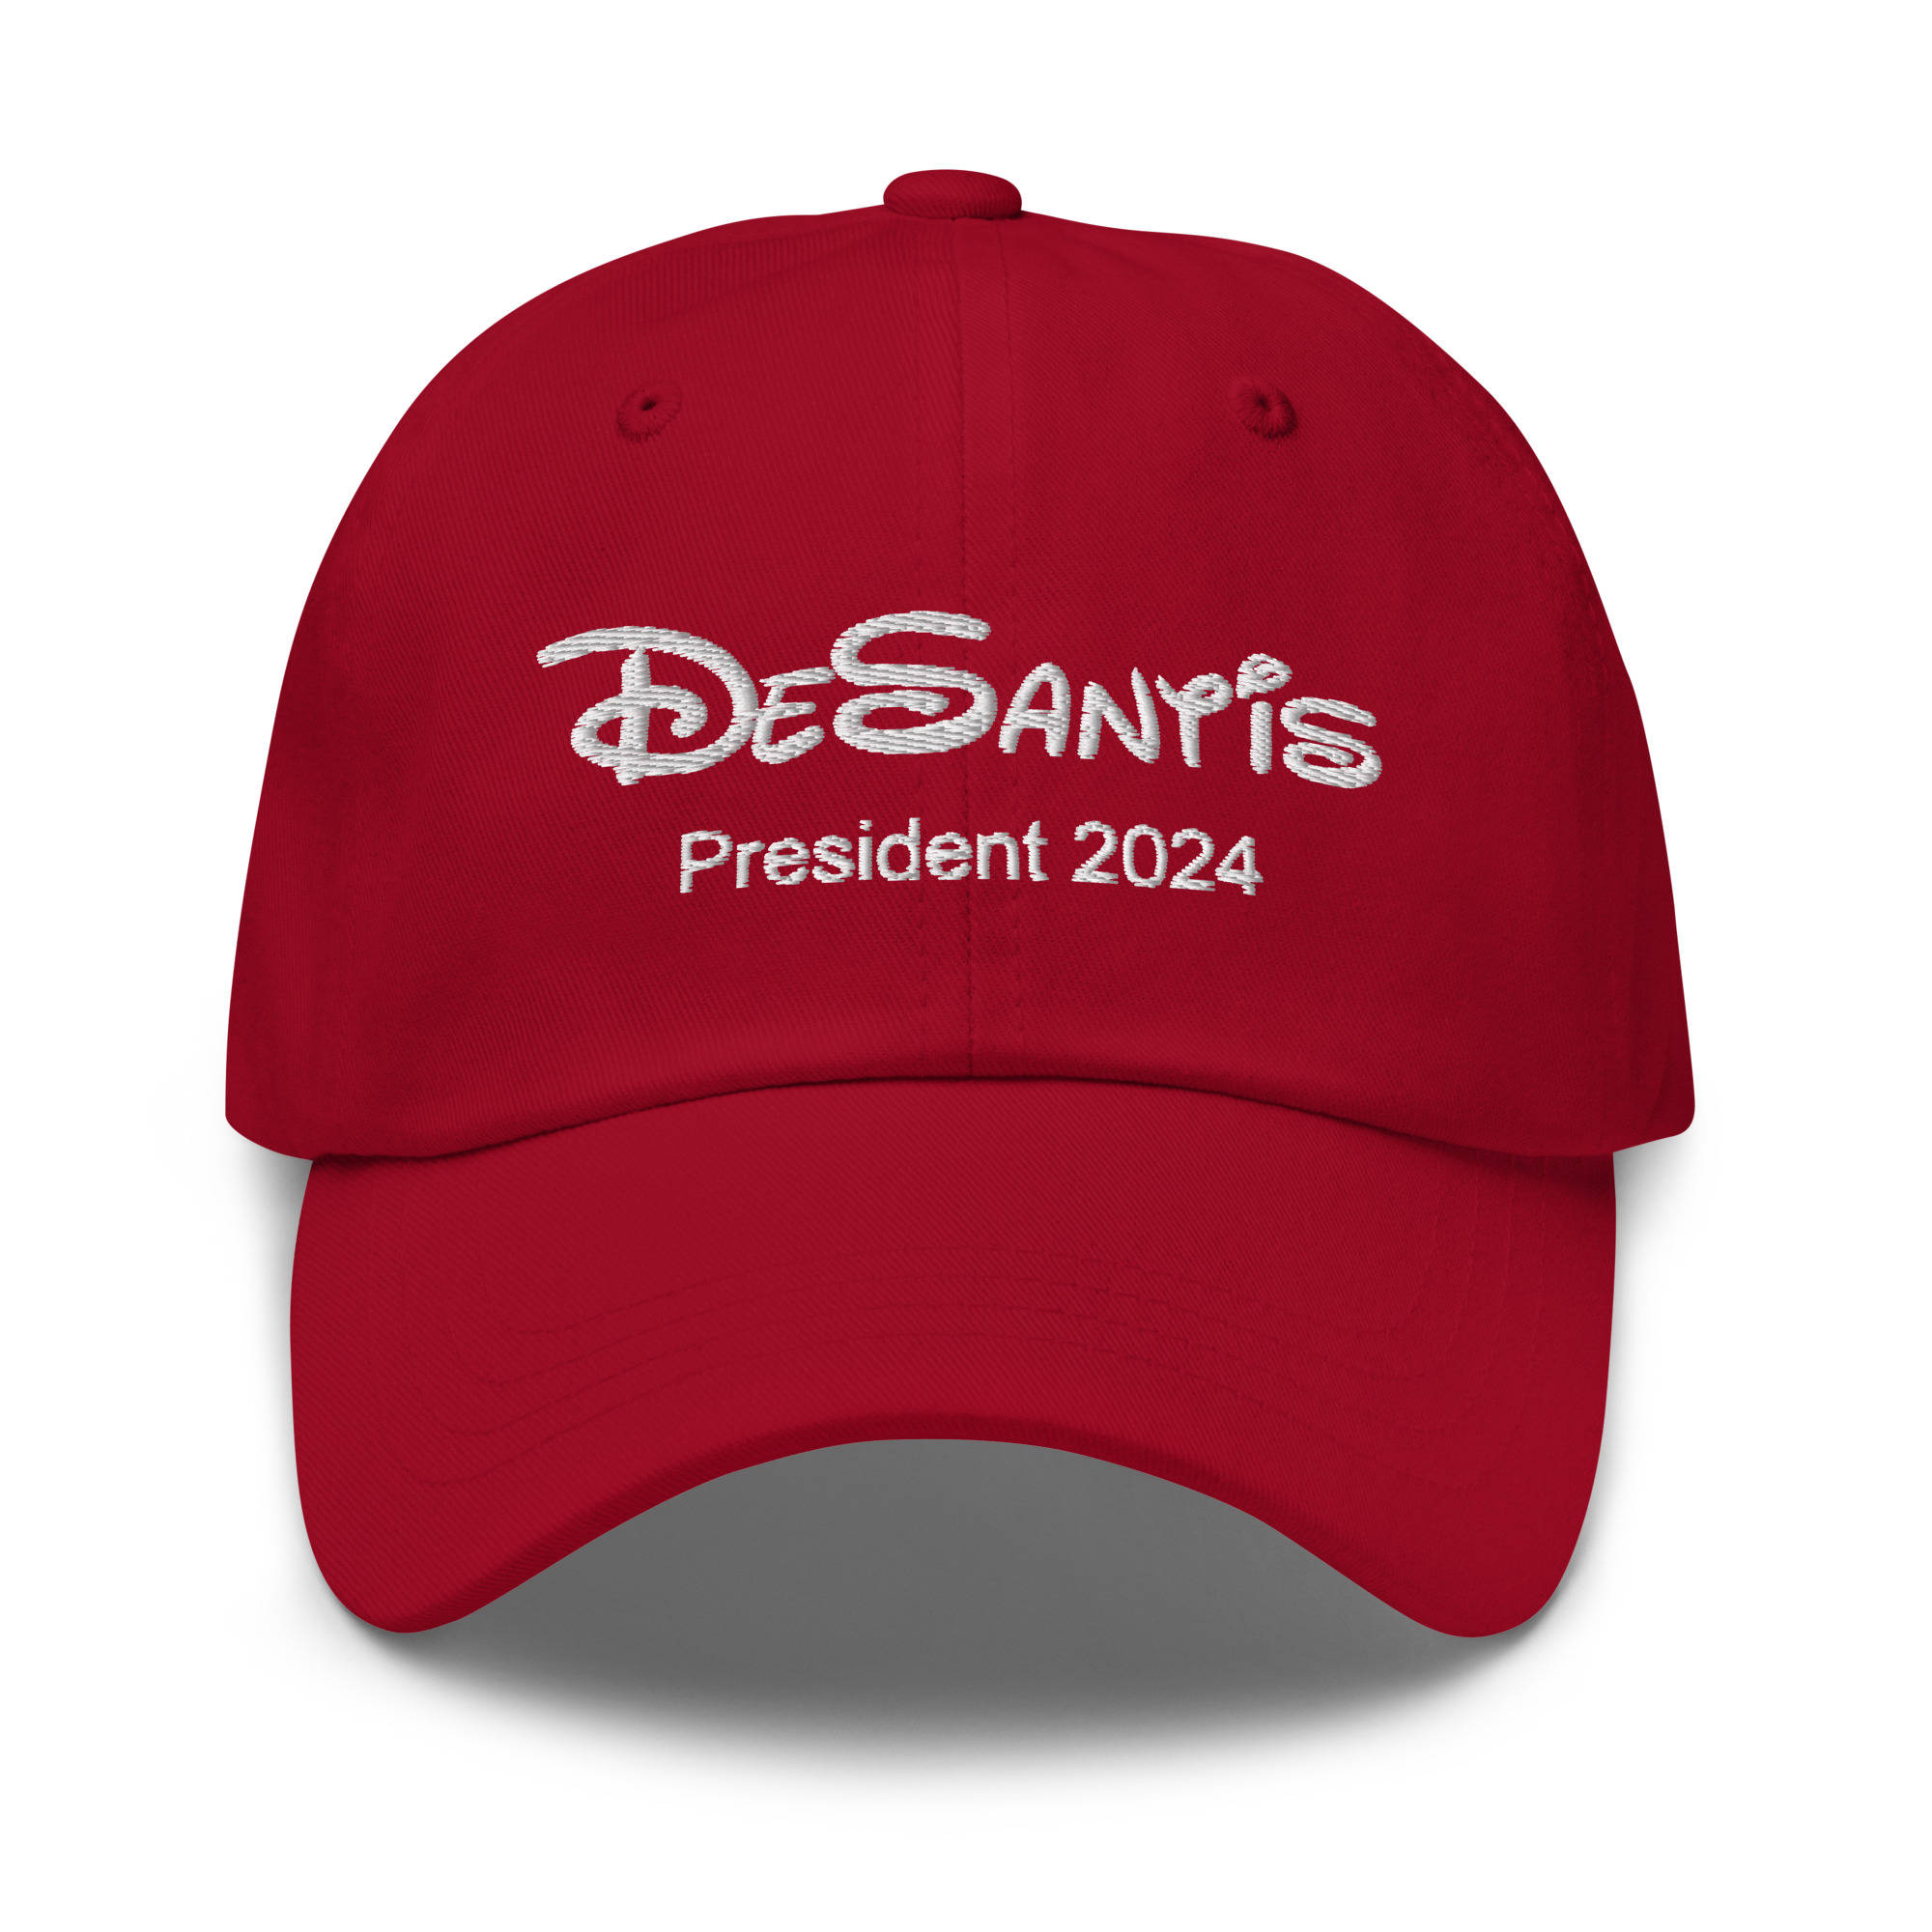 Ron DeSantis Uses Disney Font For 2024 Campaign Hats